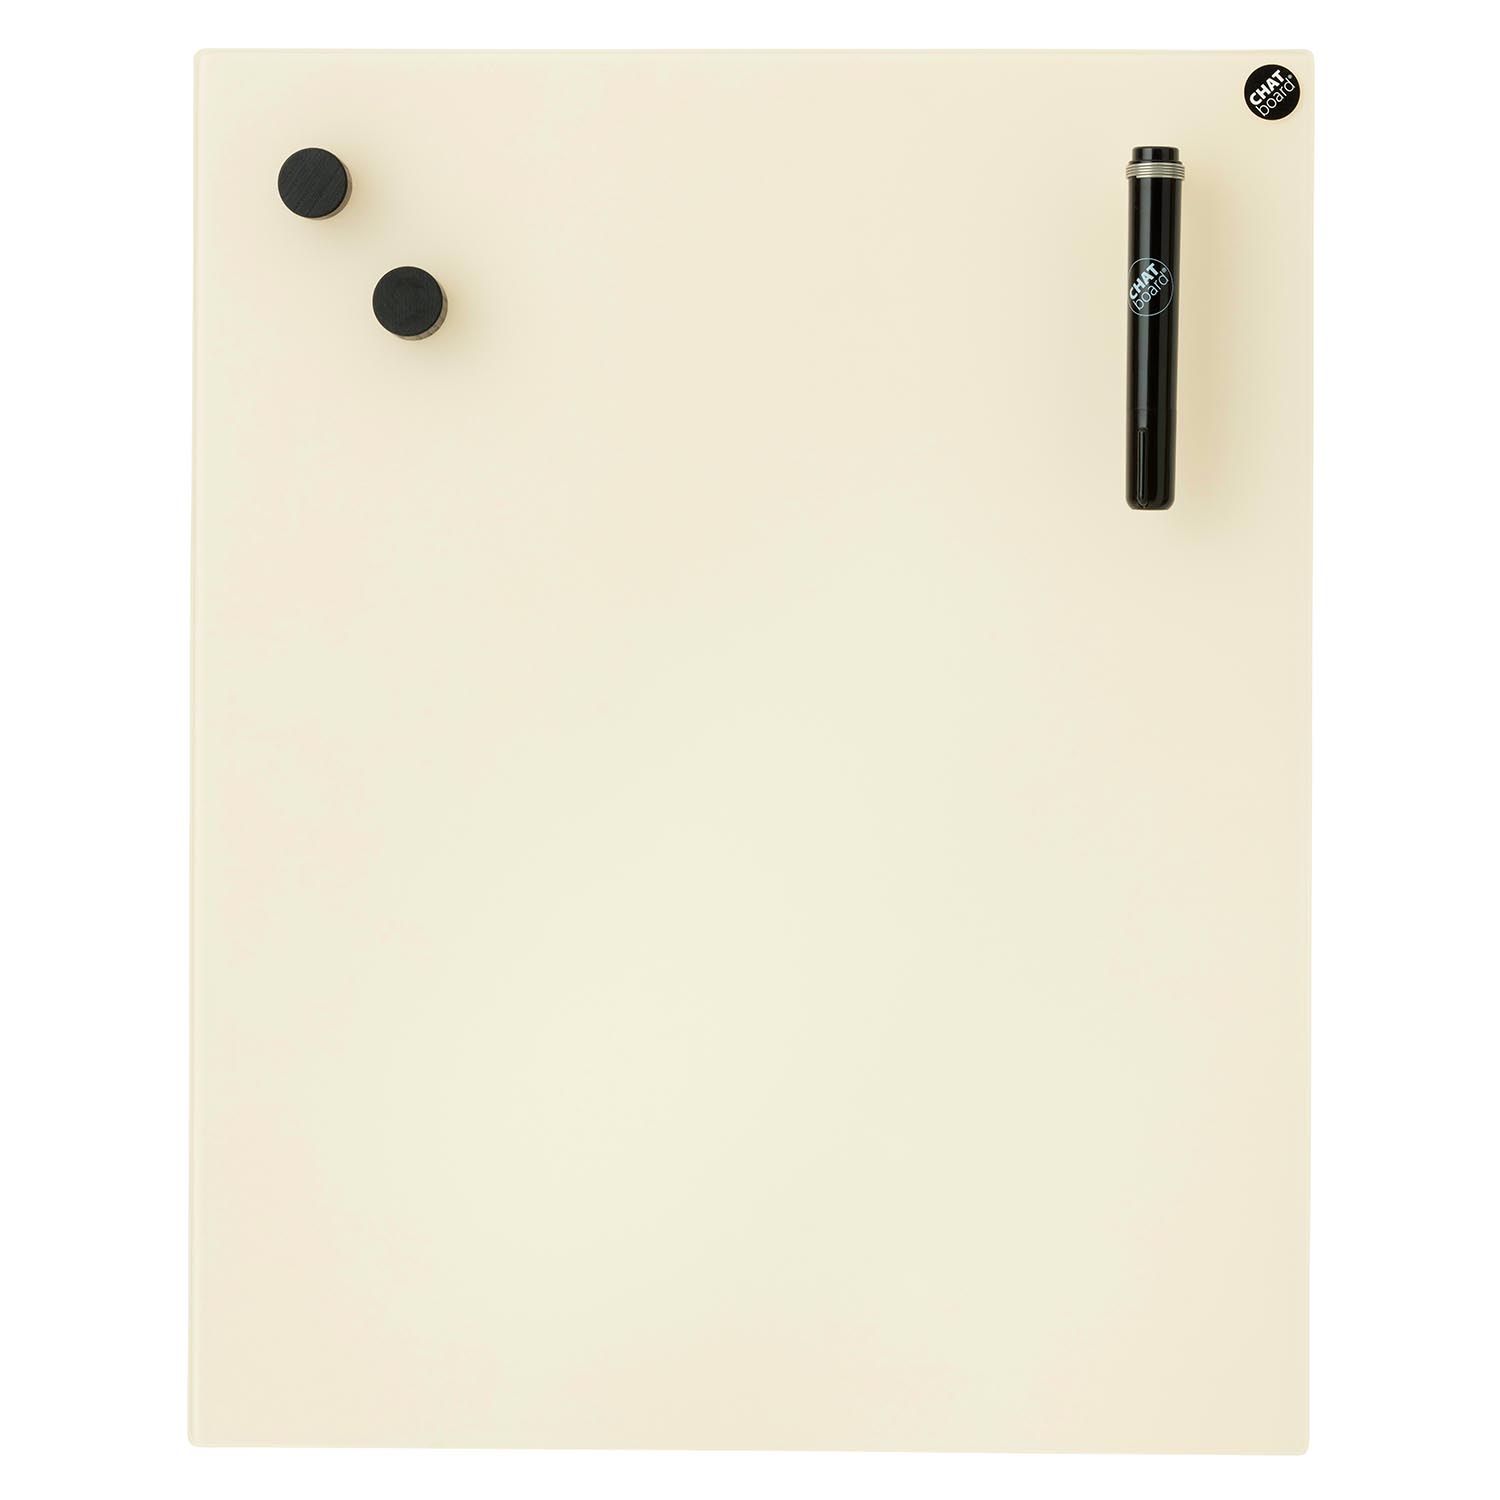 Classic Schreibtafel, Grösse 69.5 x 69.5 cm, Ausrichtung horizontal, Glas black 18 mts von Chat Board